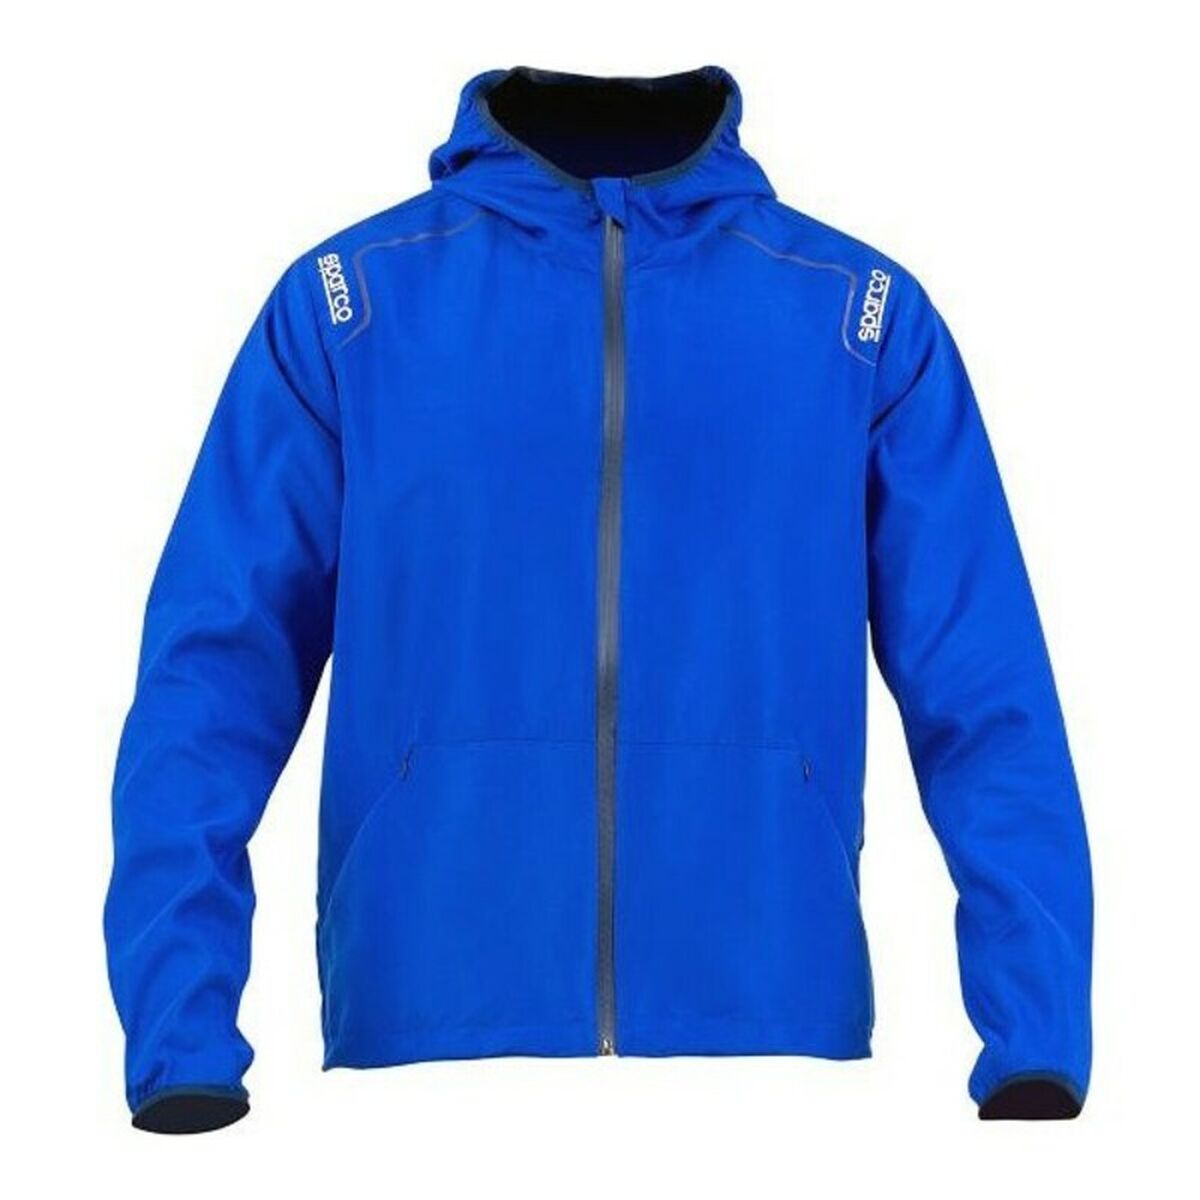 Jacke für Erwachsene Sparco Stopper Blau (Größe XL)